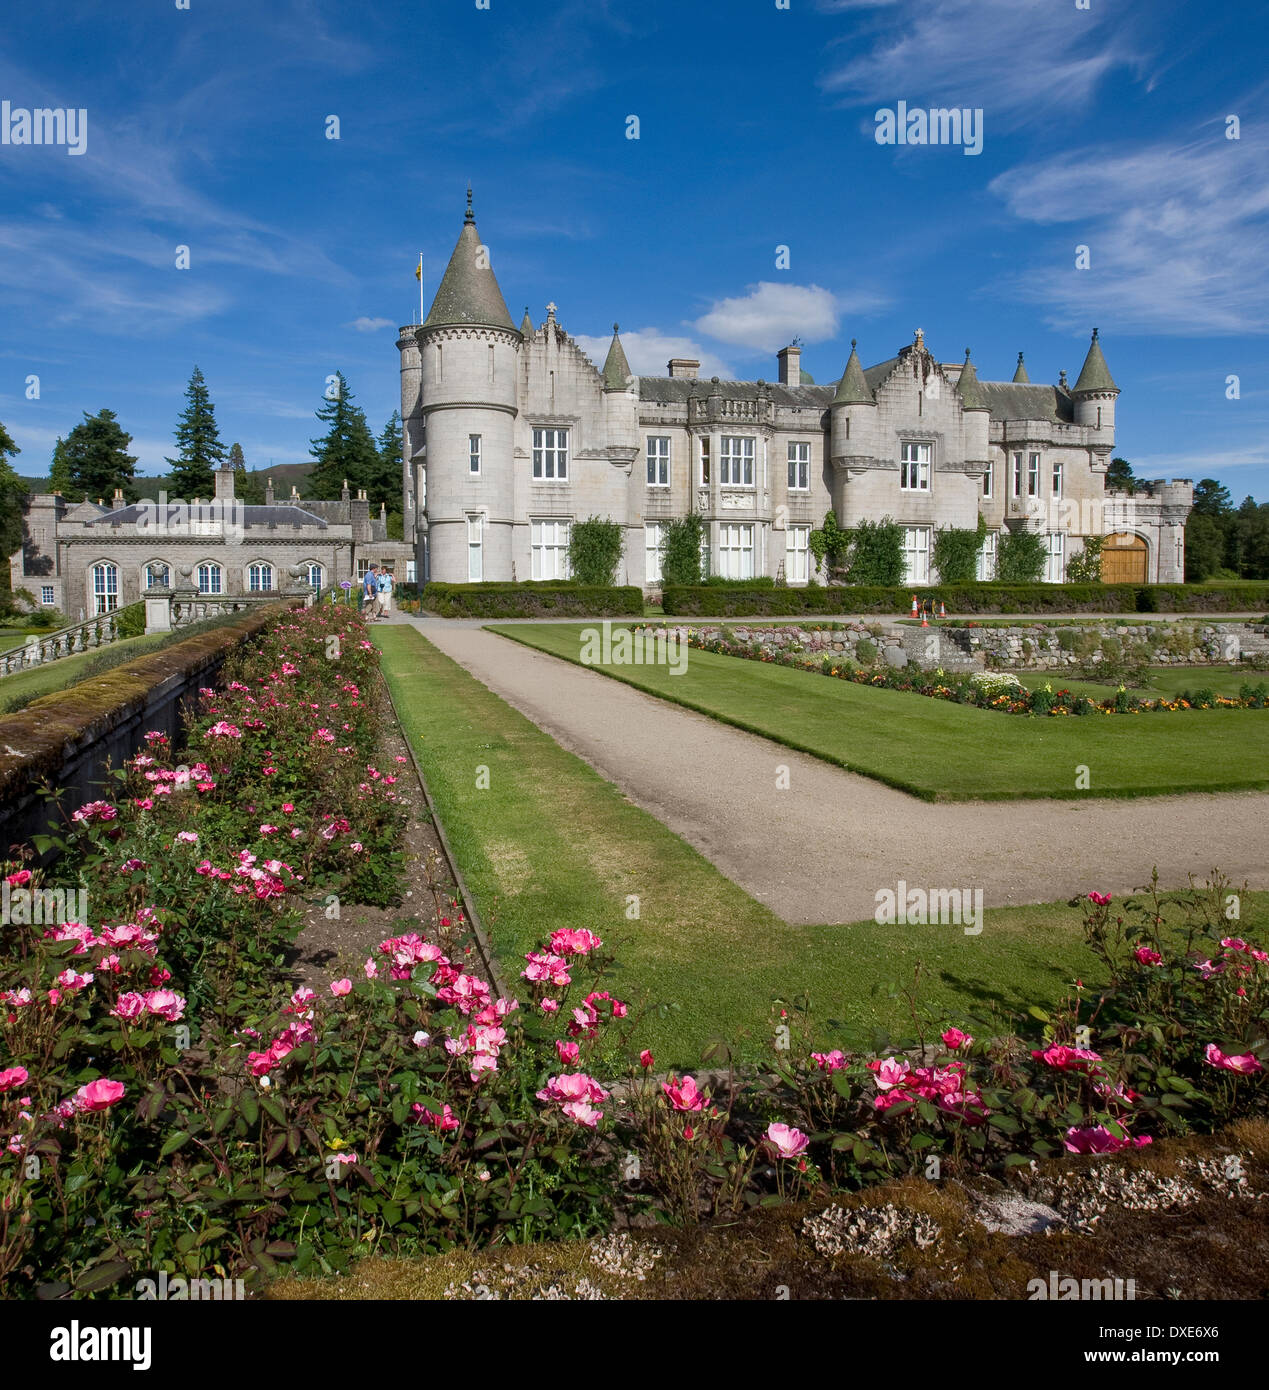 El recinto amurallado del castillo de Balmoral rose garden.queens residencia,Royal Deeside, Aberdeenshire. Foto de stock